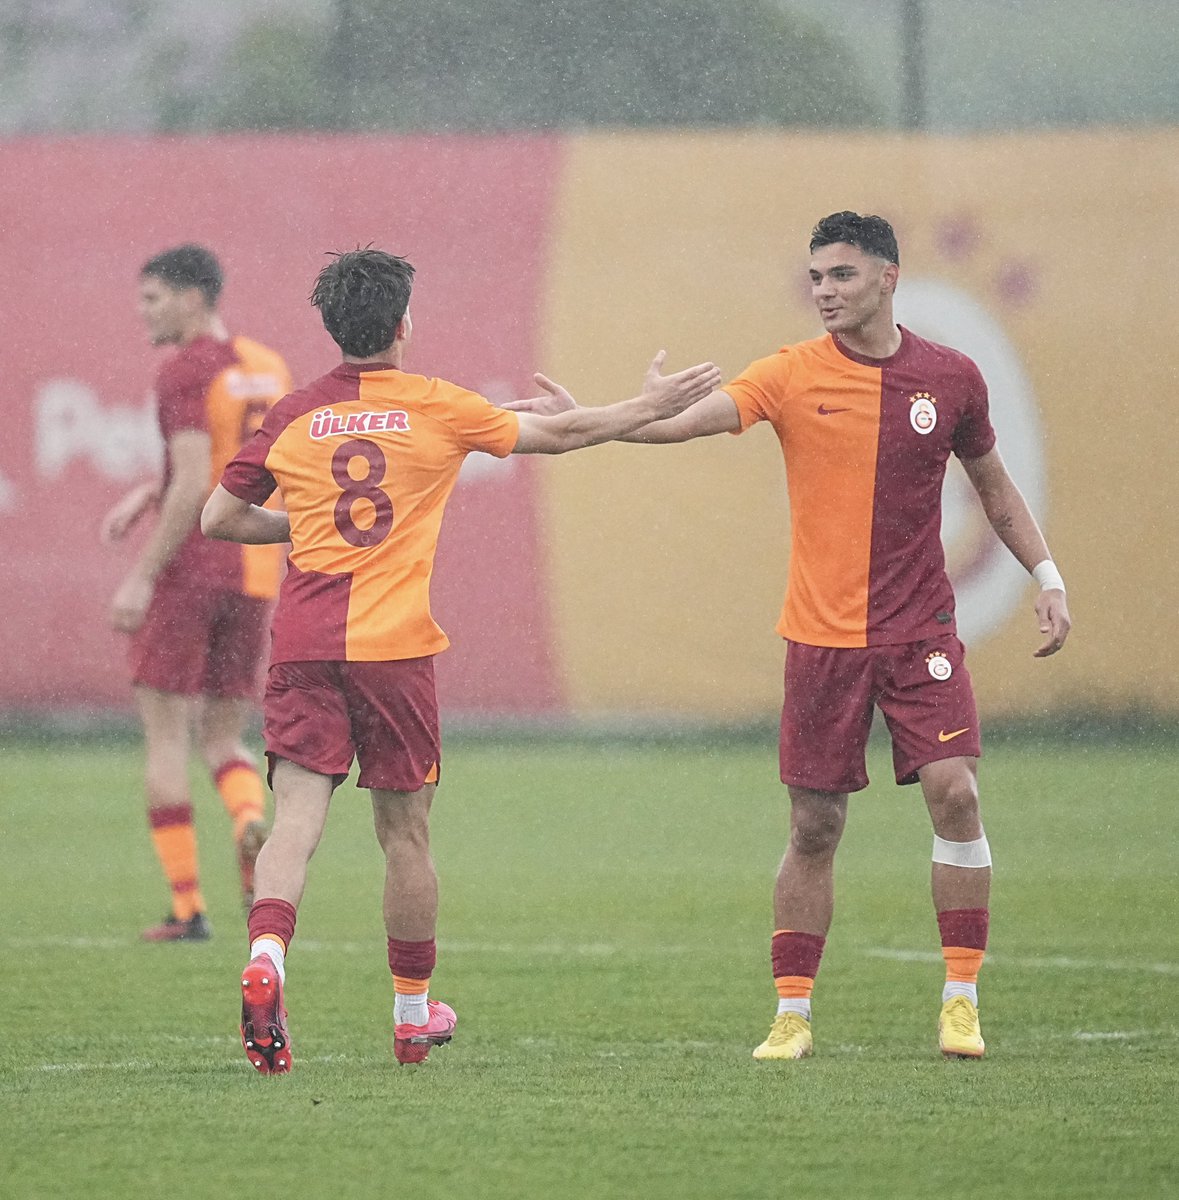 Maç sonucu: Galatasaray U19 5-1 Y. Adana Demirspor U19 👏 ⚽️ 6' Yasin Kasal ⚽️ 45+3', 90+2’ Baran Demiroğlu ⚽️ 68’ Halim Ayaz Yükseloğlu ⚽️ 71’ Batın Kemertaş ℹ️ Grubunu lider tamamlayan U19 takımımız, yarı final aşamasına kaldı. 💪